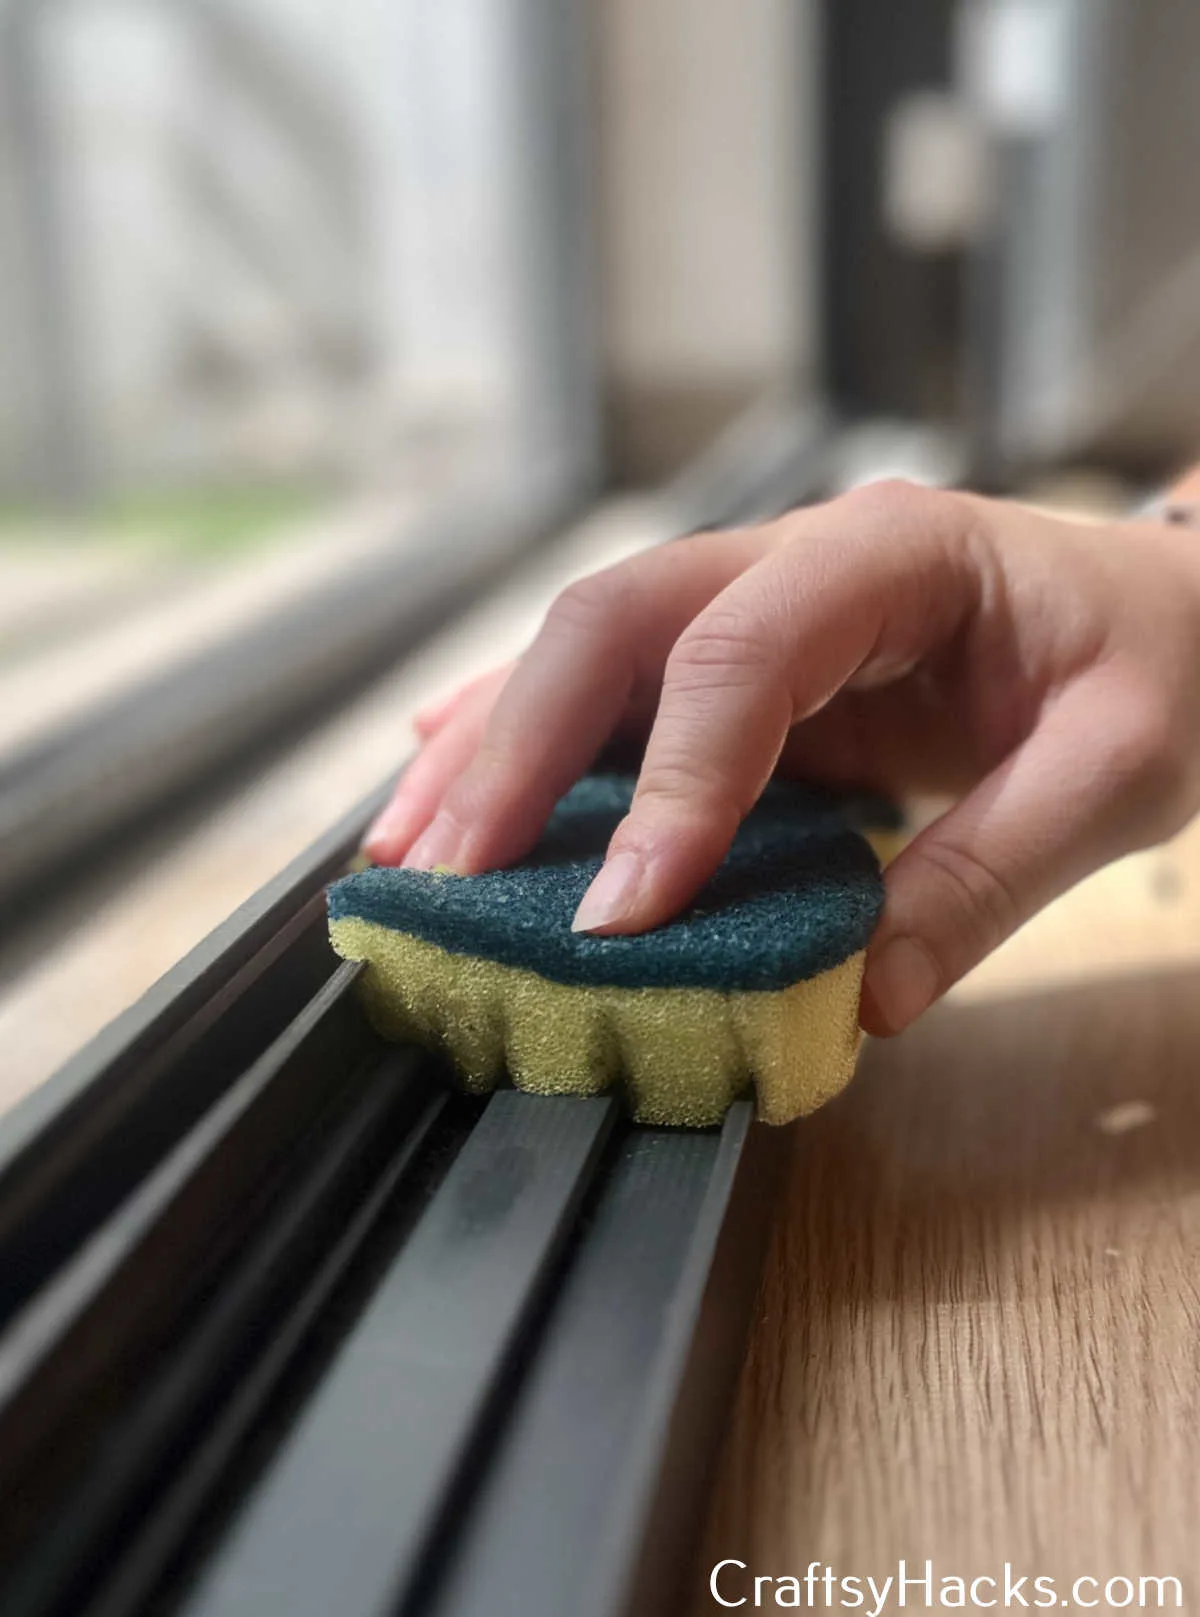 cut sponge to clean windows easier